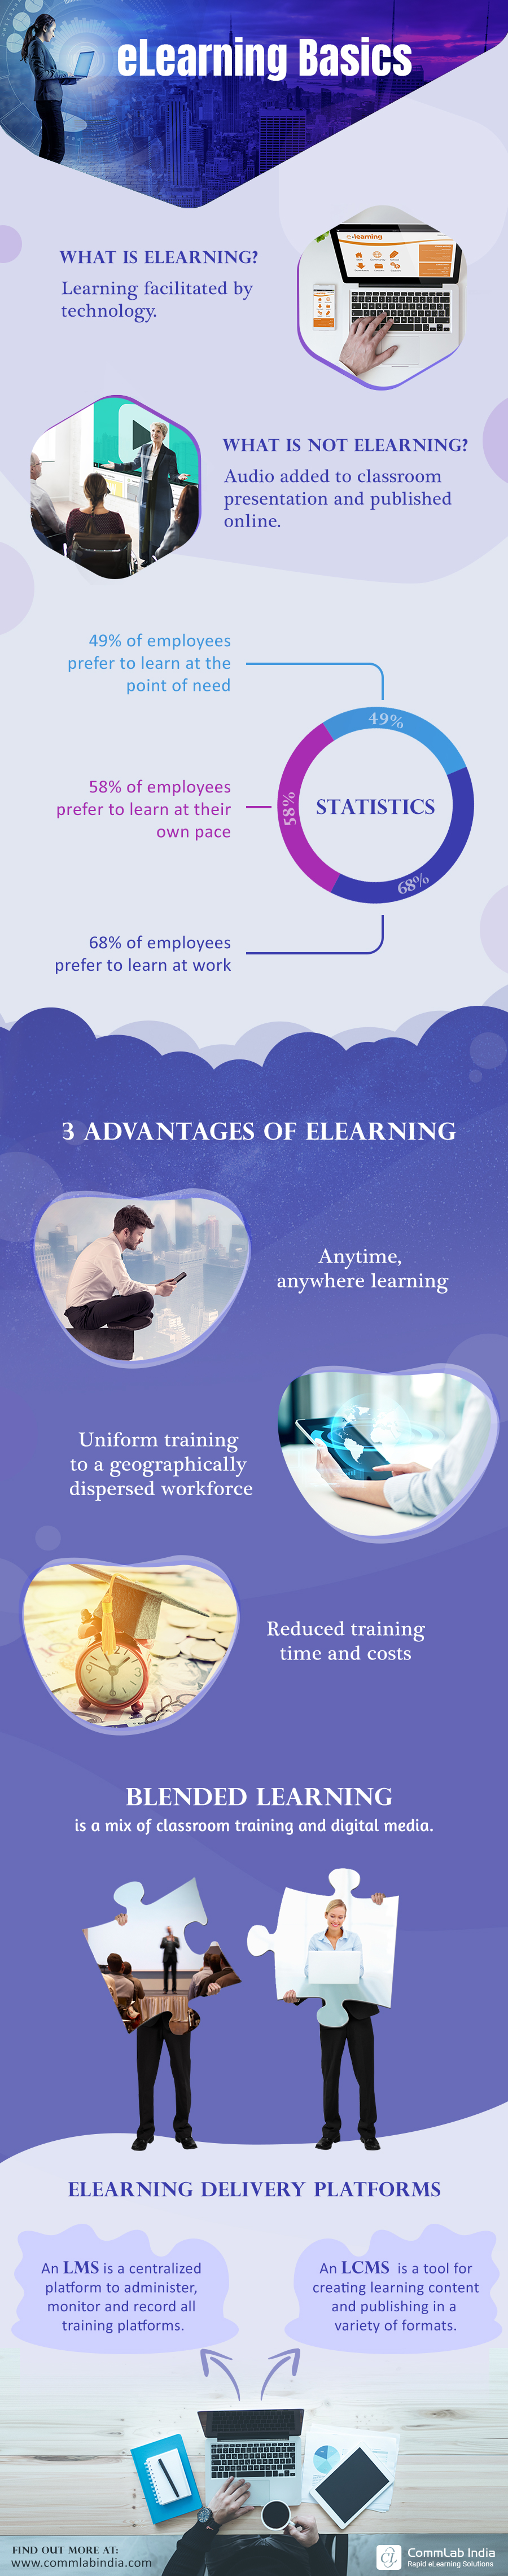 eLearning Basics [Infographic]